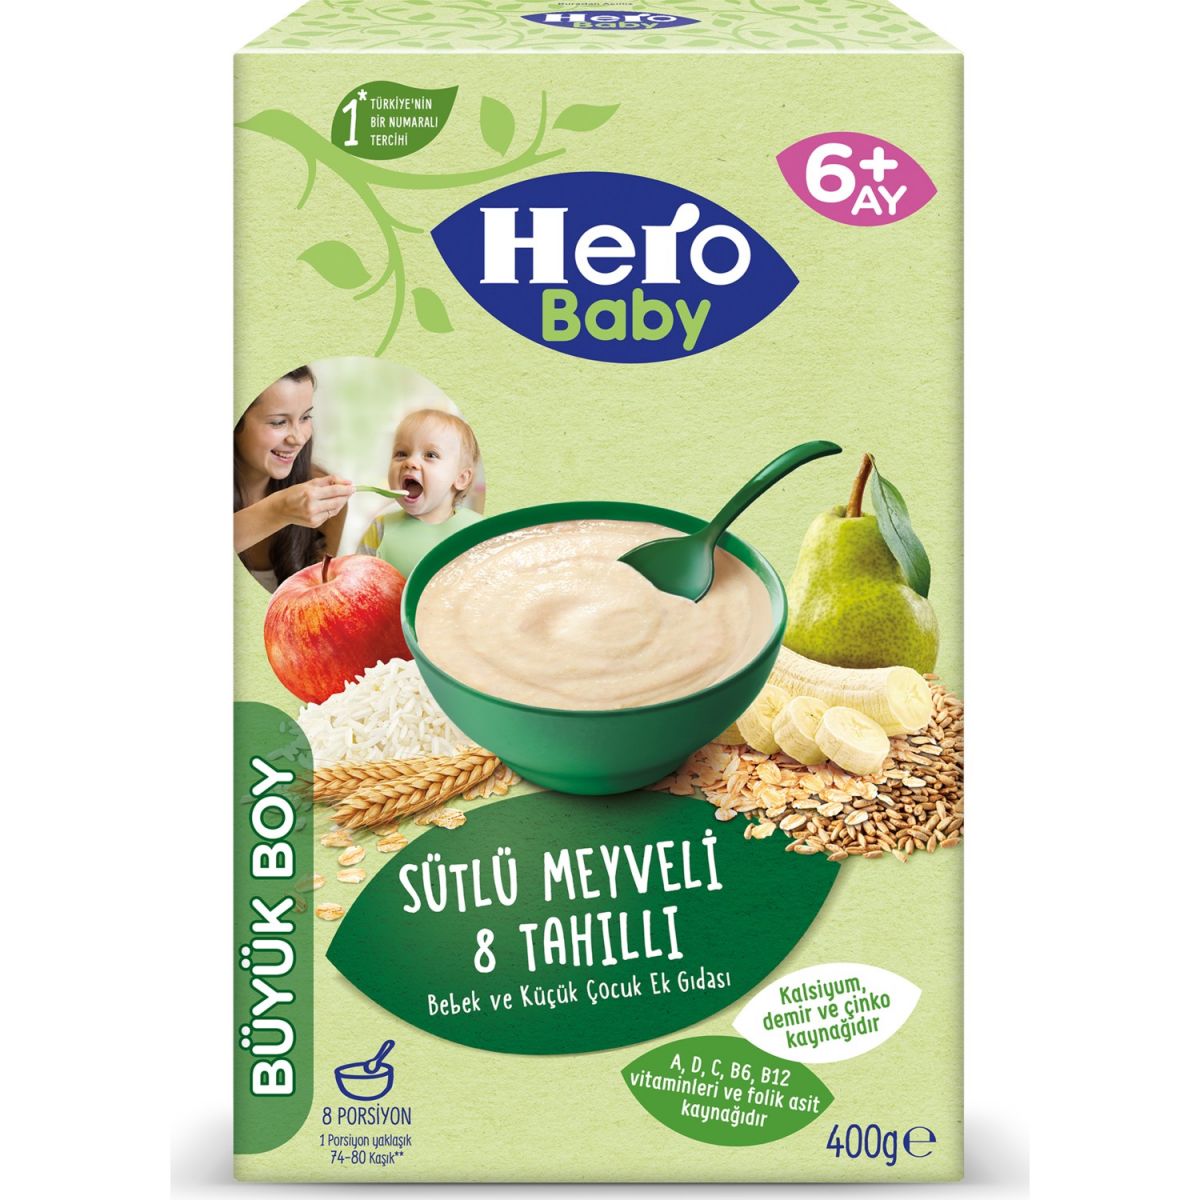 Hero Baby Sütlü 8 Tahıllı Meyveli Kaşık Mama 400 gr